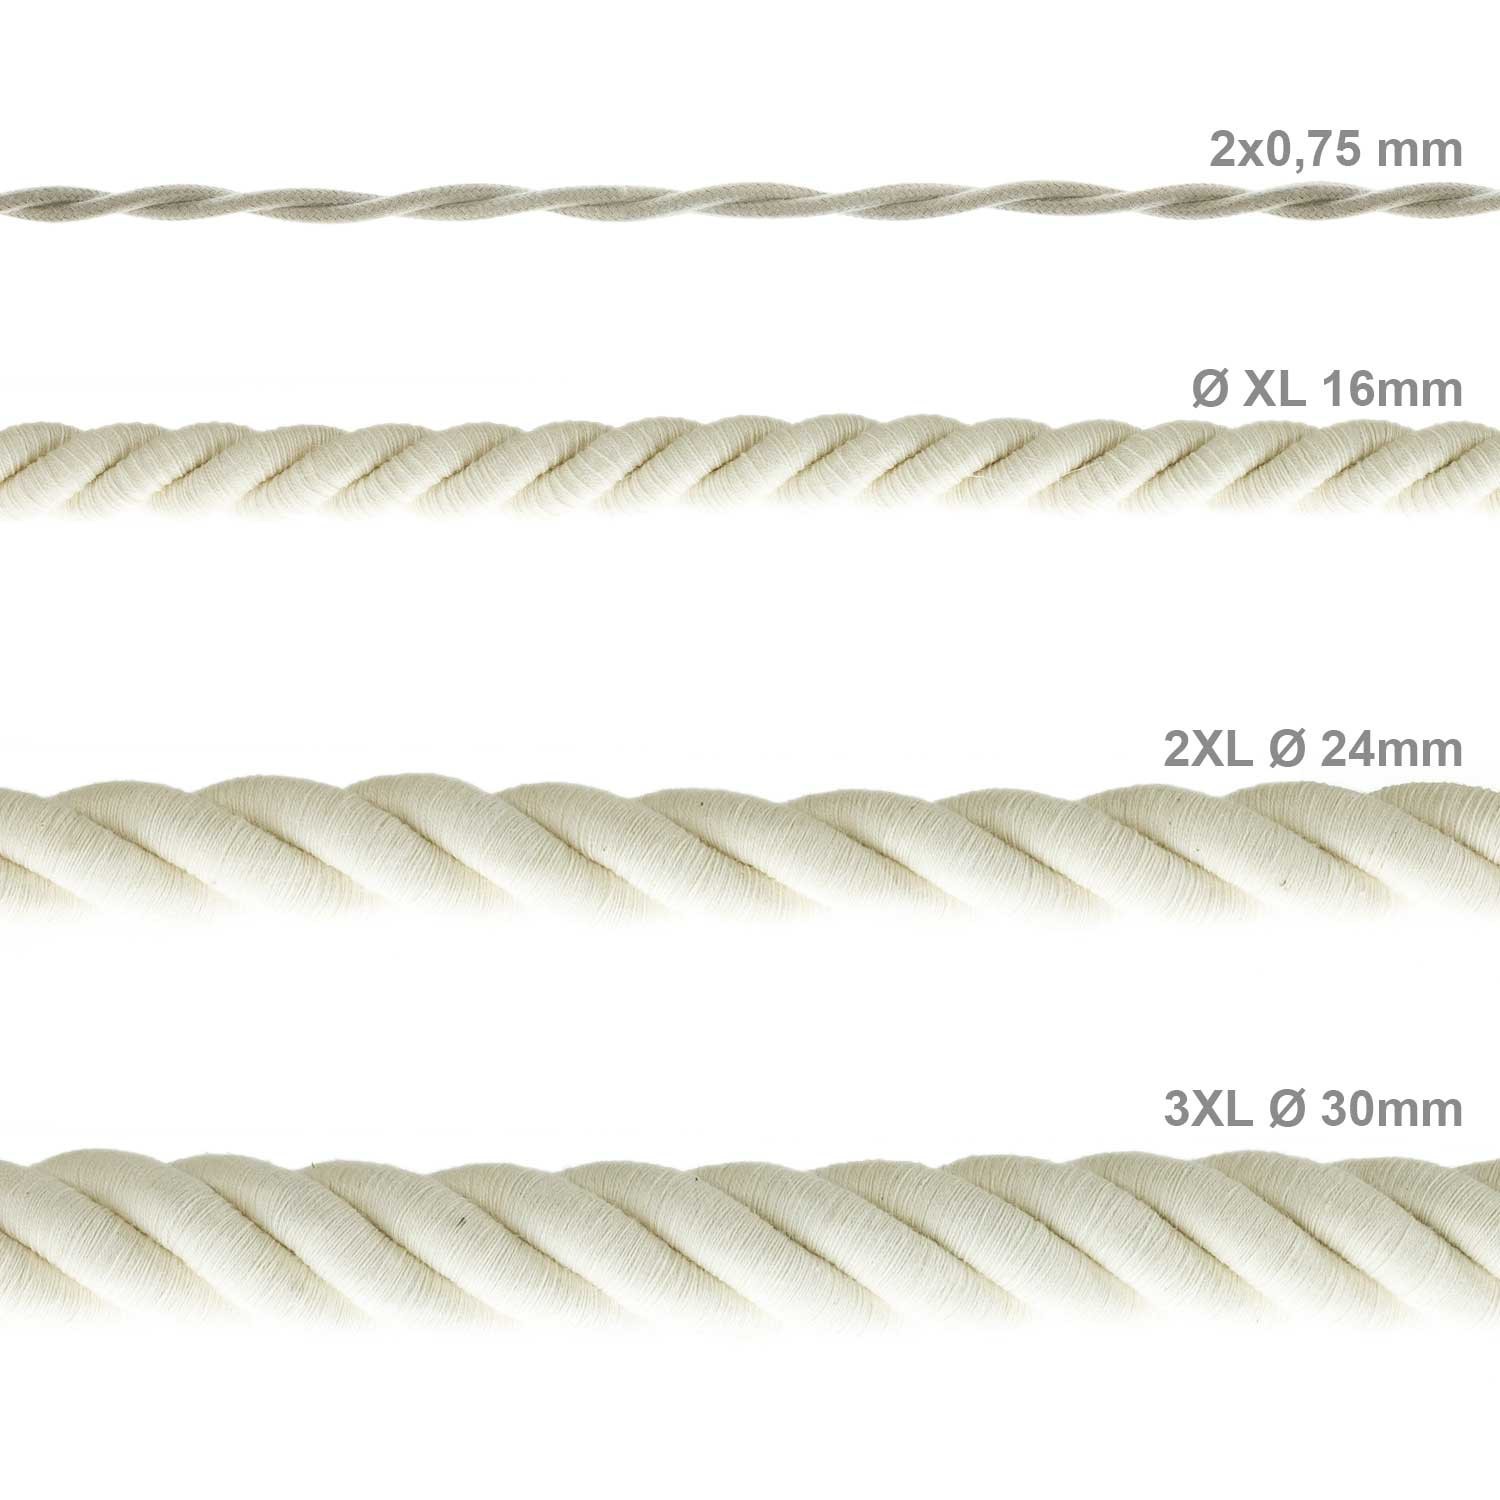 Cordón XL, cable eléctrico 3x0,75, recubierto en algodón en bruto. Diámetro: 16mm.